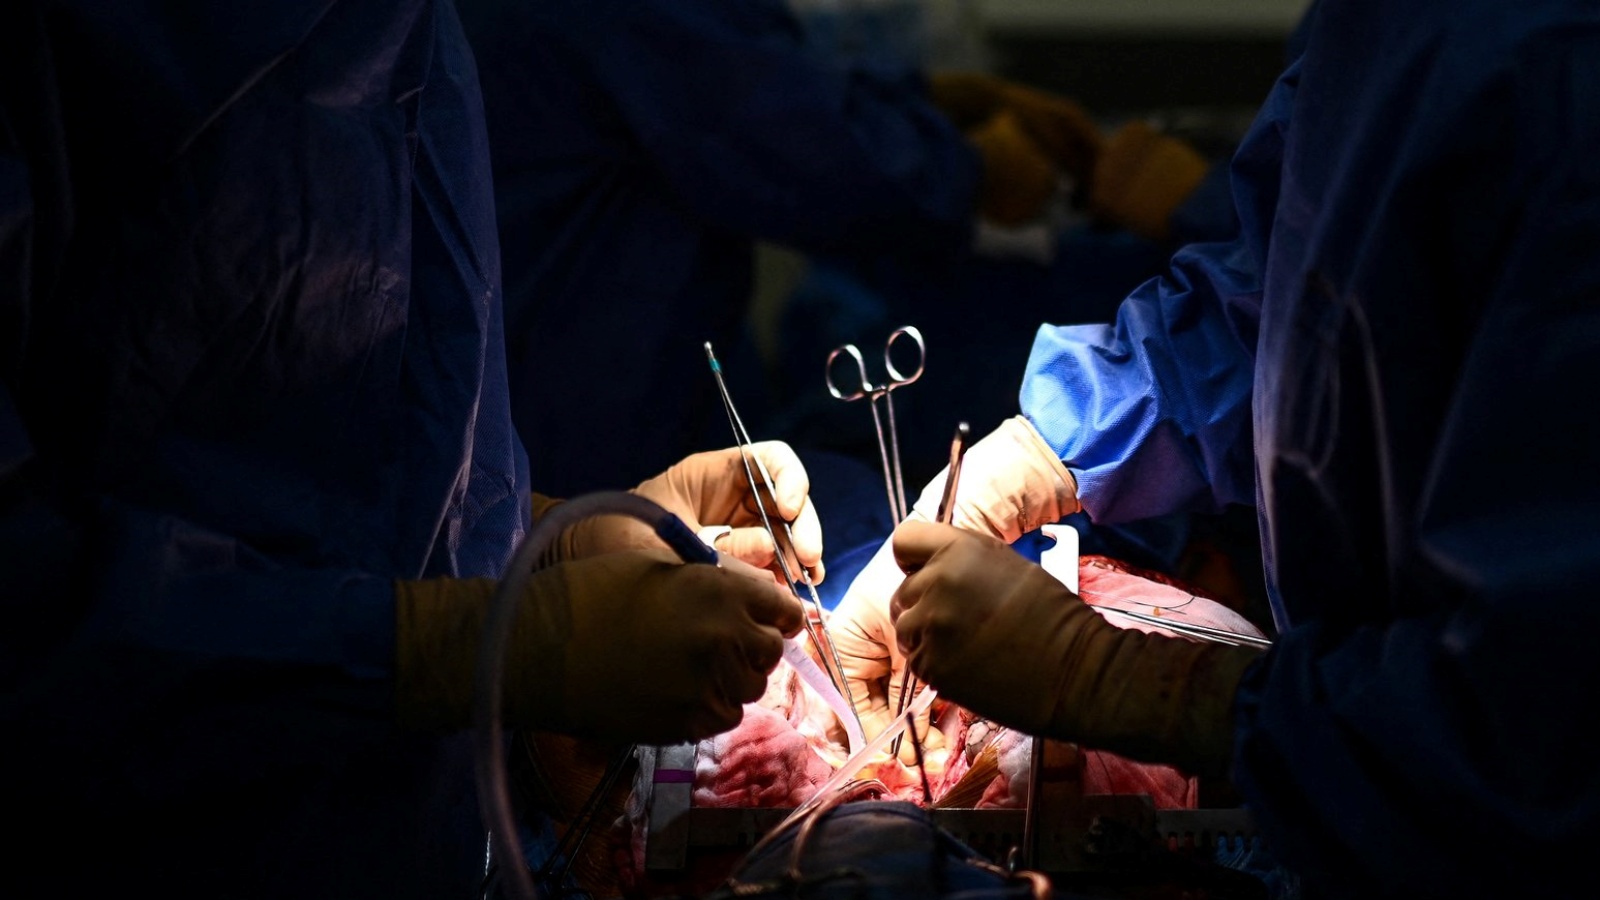 جراحون أميركيون يتمكنون للمرة الأولى من زرع كلية خنزير معدّل وراثياً لمريض حيّ